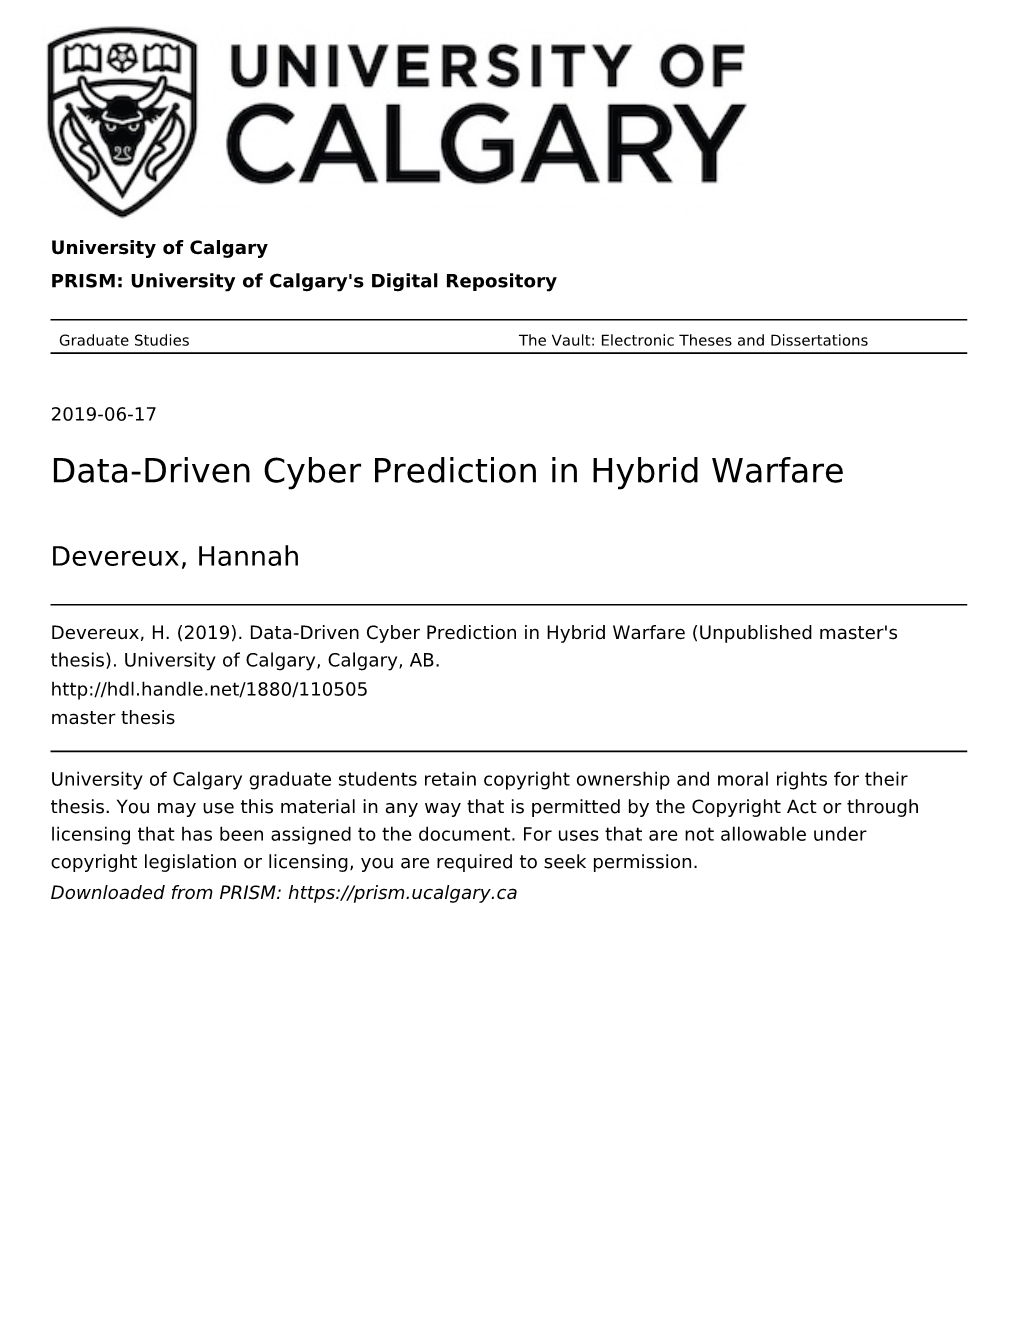 Data-Driven Cyber Prediction in Hybrid Warfare